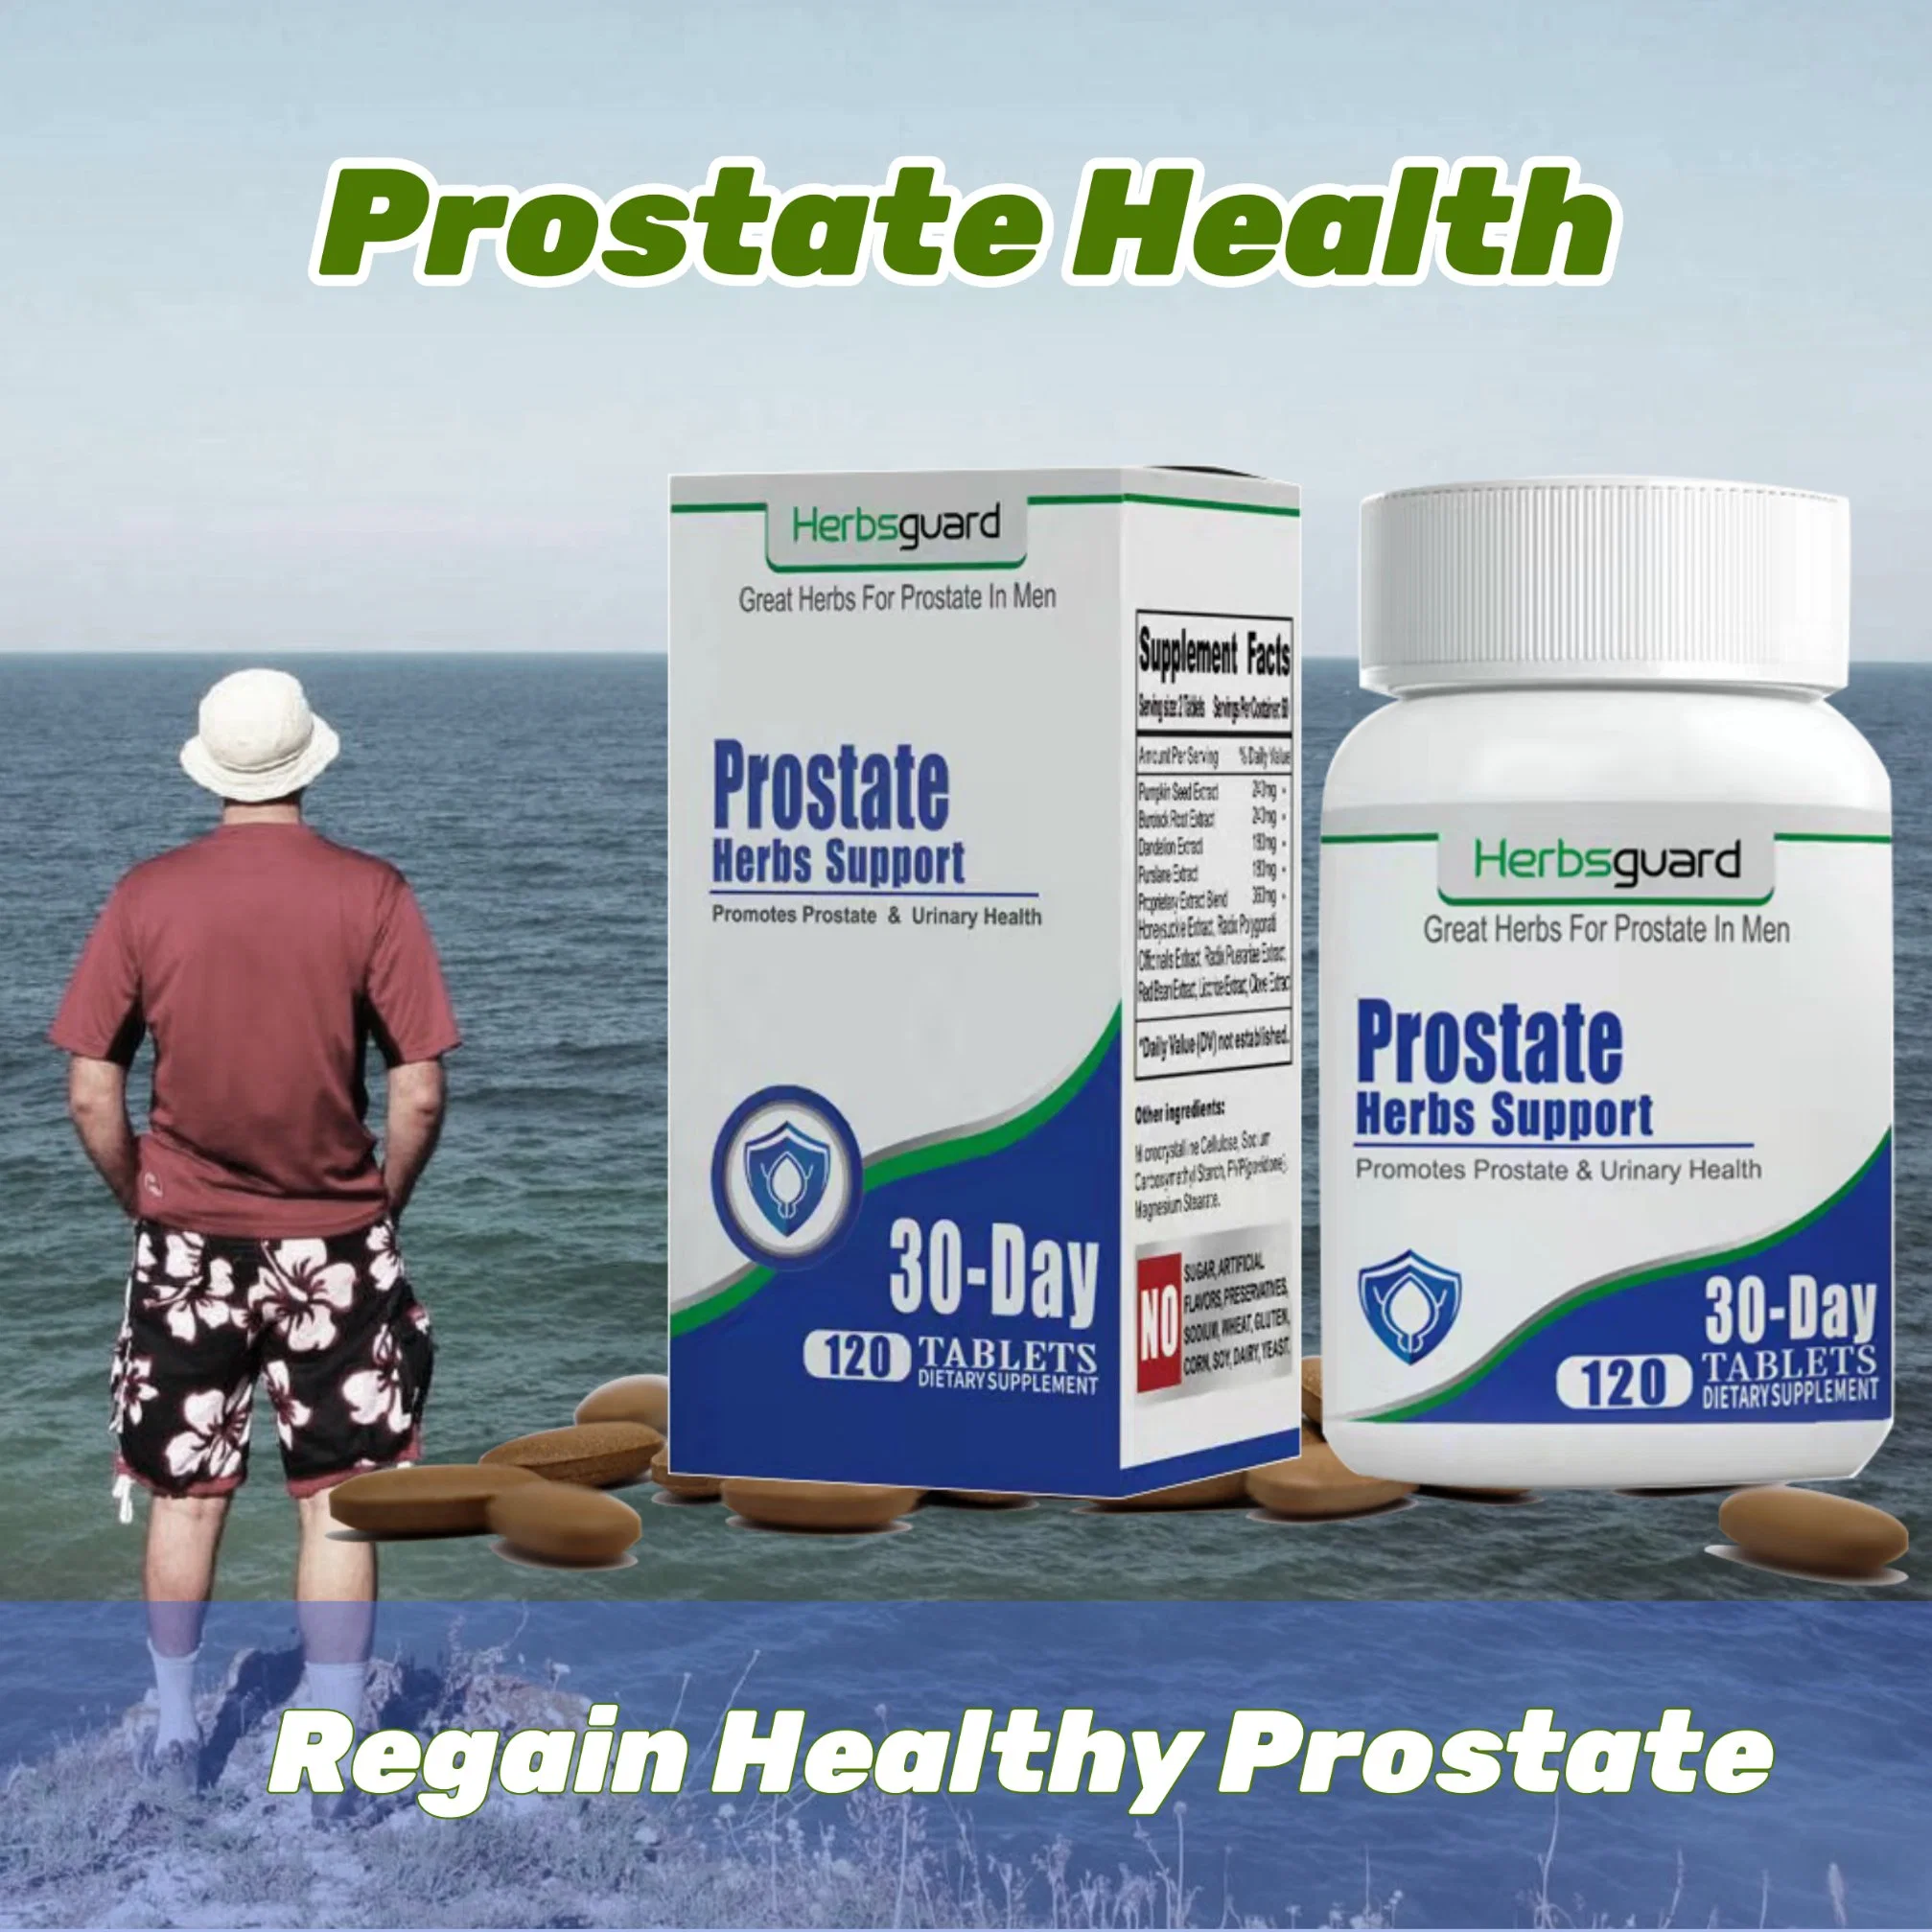 Pflanzliche Heilmittel Behandlung stimuliert die Durchblutung um Prostata, heilt vergrößerte Prostata und Skrotalschmerzen, stoppt häufige dringende schmerzhafte Wasserlassen